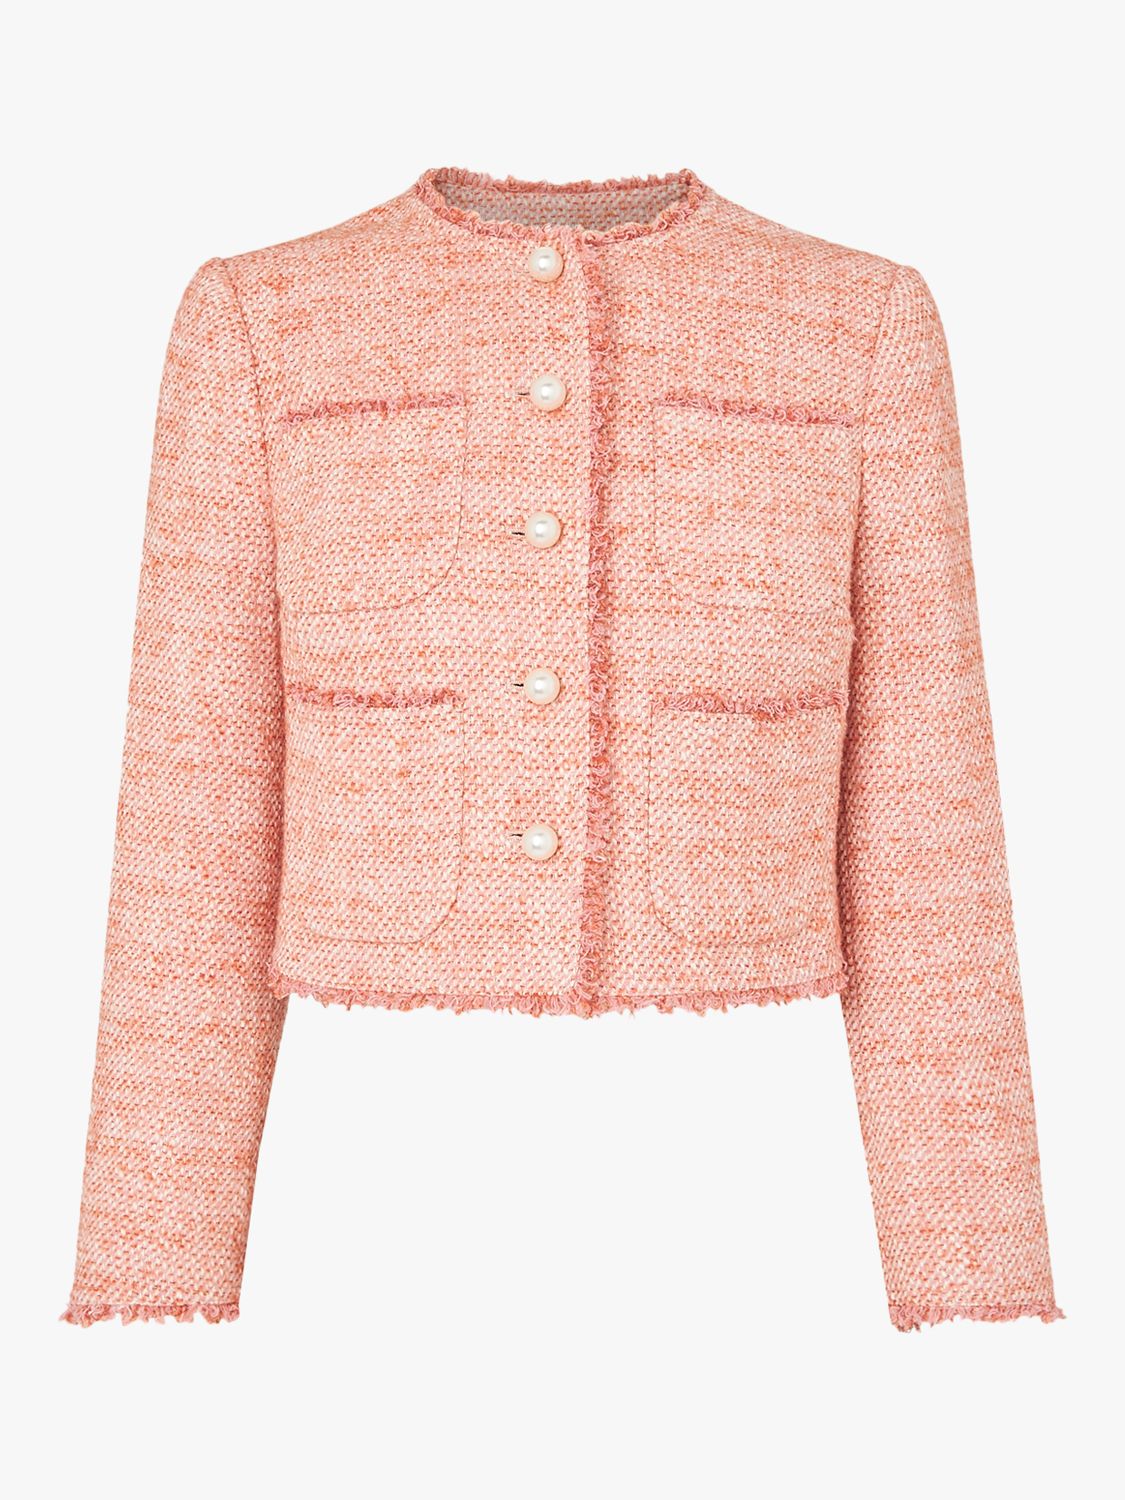 L.K.Bennett Celeste Cropped Tweed Jacket, Pale Pink at John Lewis ...